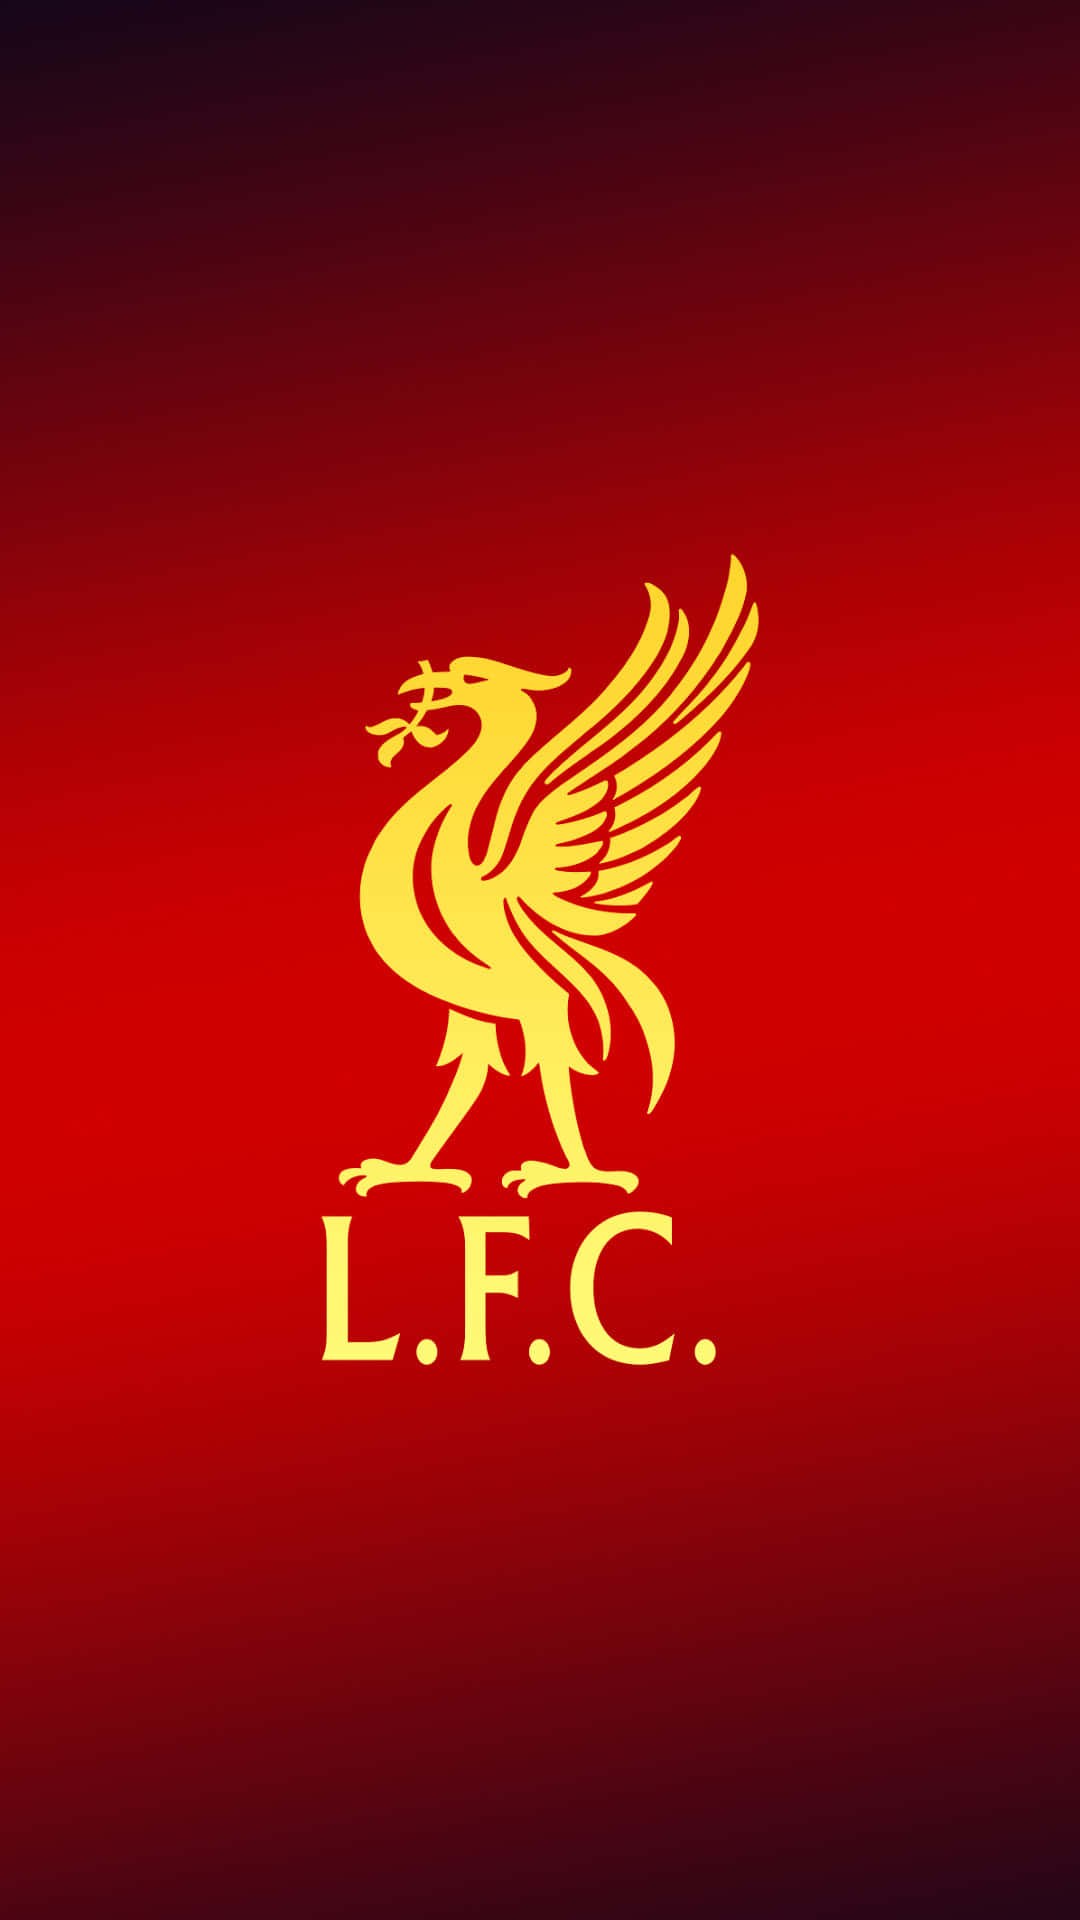 Celebrael Éxito Del Club De La Premier League, Liverpool Fc, Con Este Exclusivo Iphone 11 Temático Del Liverpool Fc. Fondo de pantalla